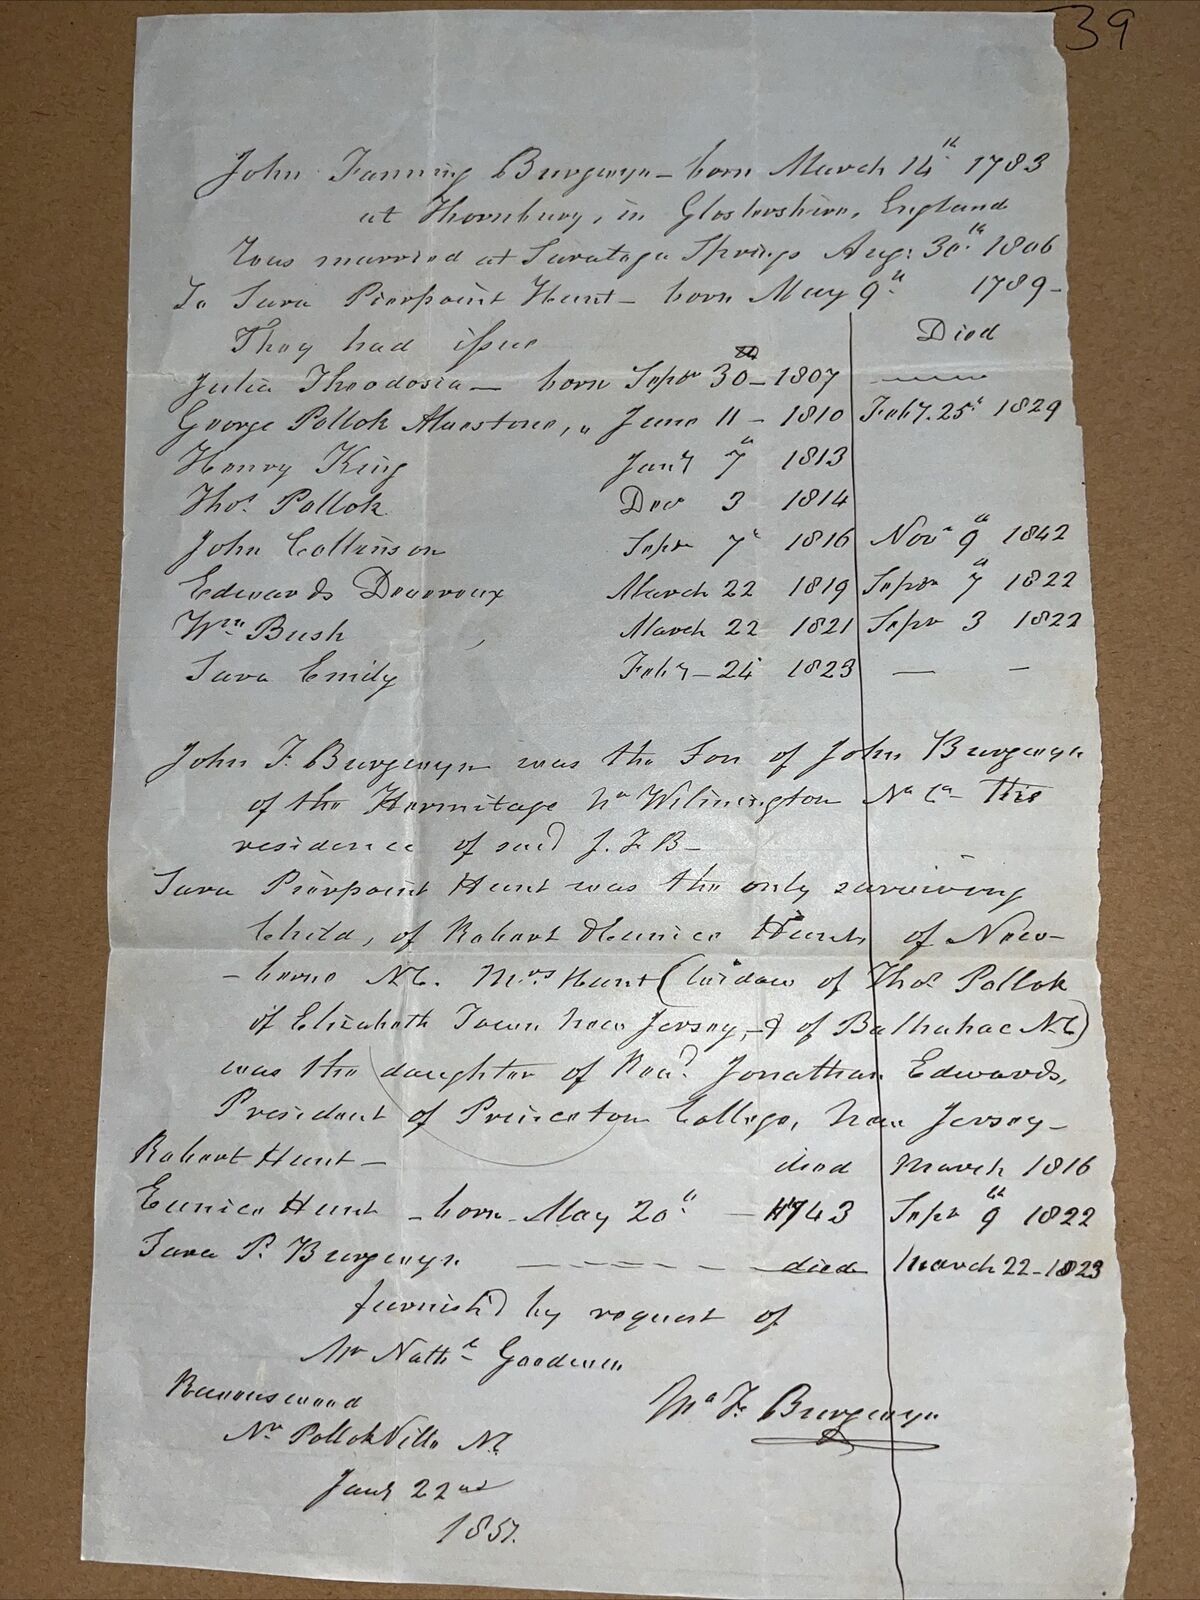 Letter on John Burgwyn Burgwin Genealogy: Wilmington NC Cape Fear Merchant’s Son